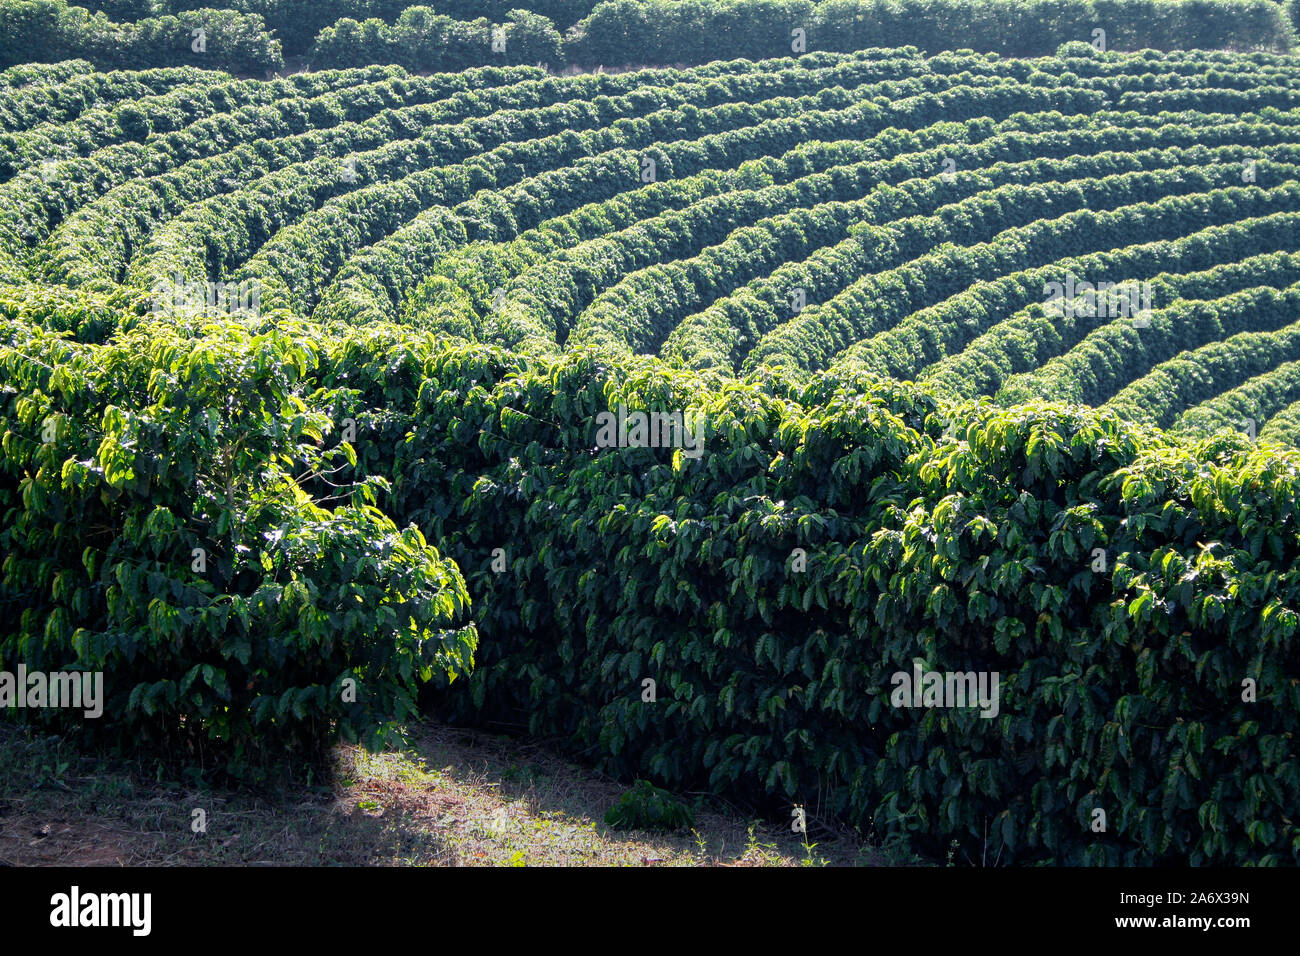 Ver granja con plantación de café - Granja plantación de café en Brasil - Cafe do Brasil - café brasileño Foto de stock